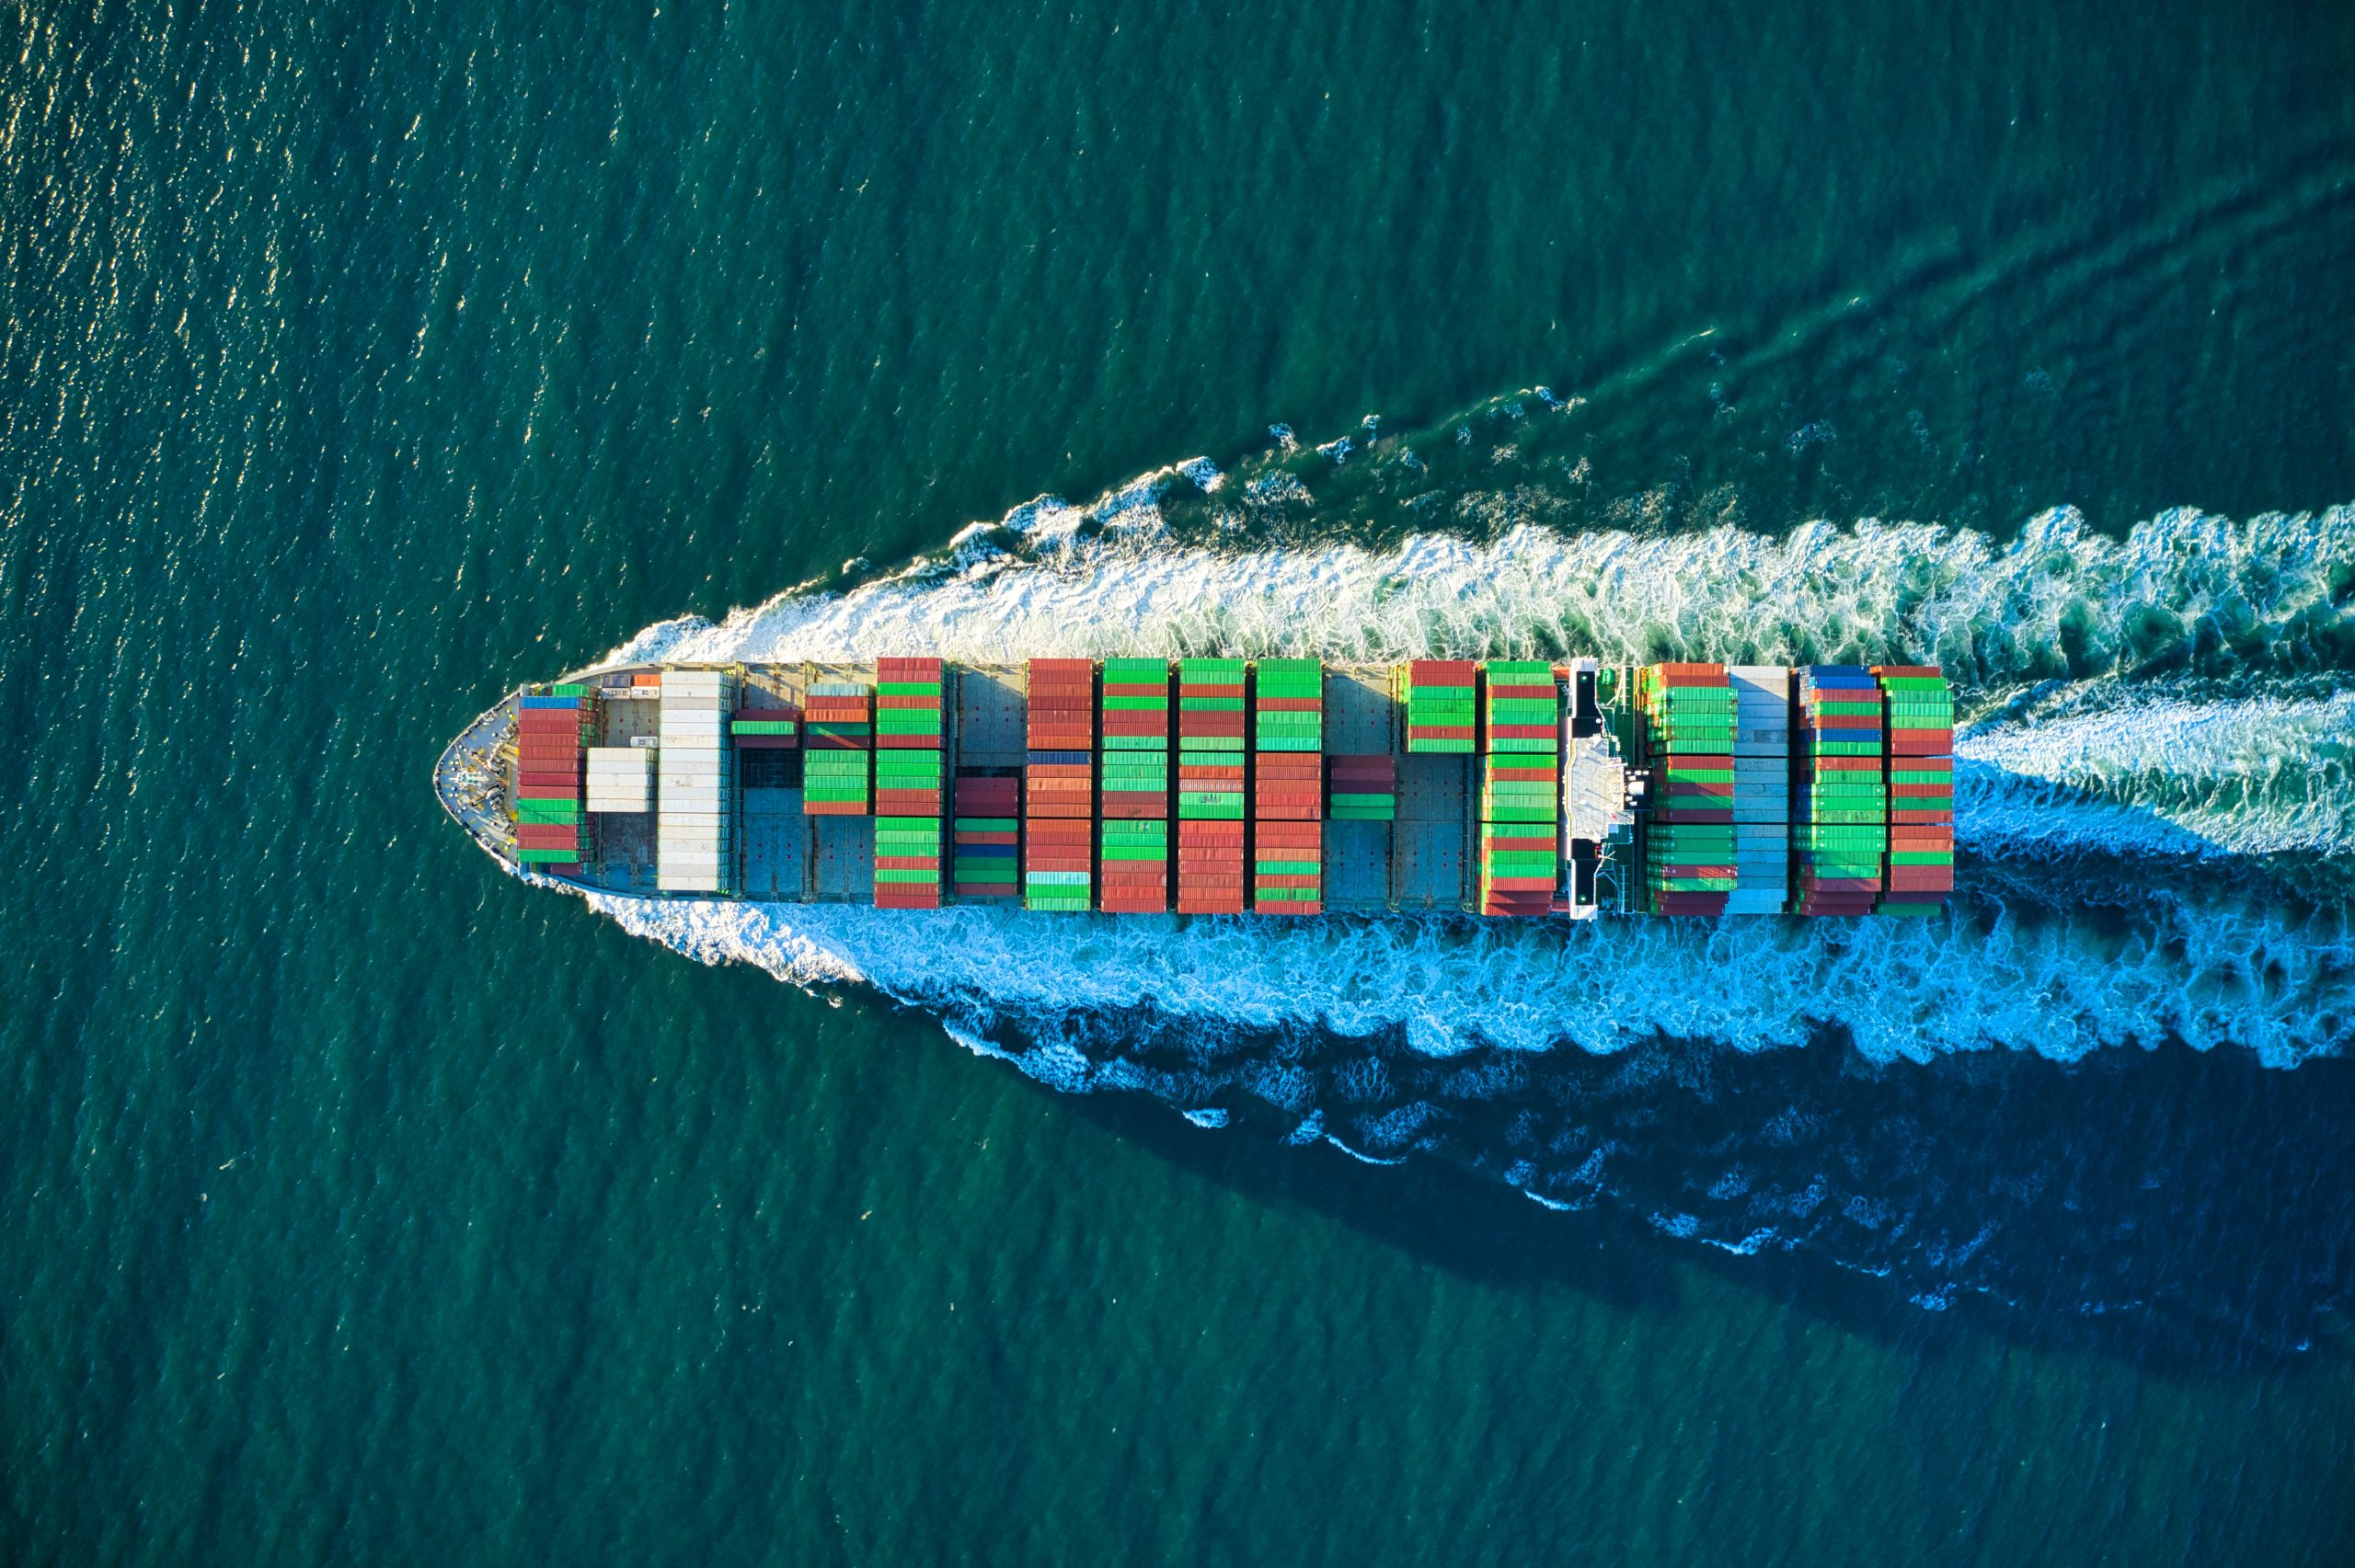 Colorful cargo ship